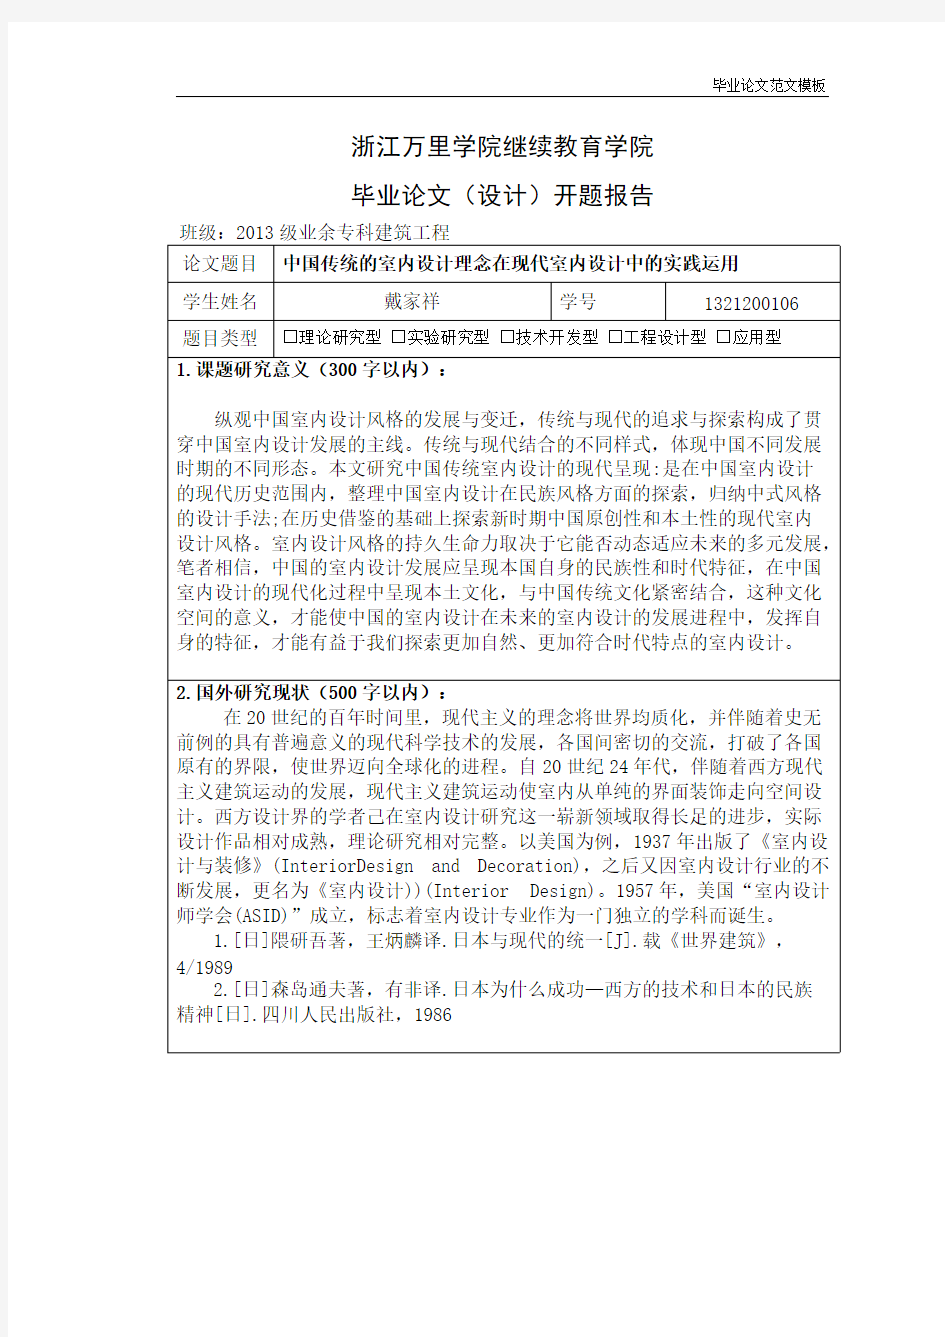 开题中国传统的室内设计理念在现代室内设计中的实践运用.pdf